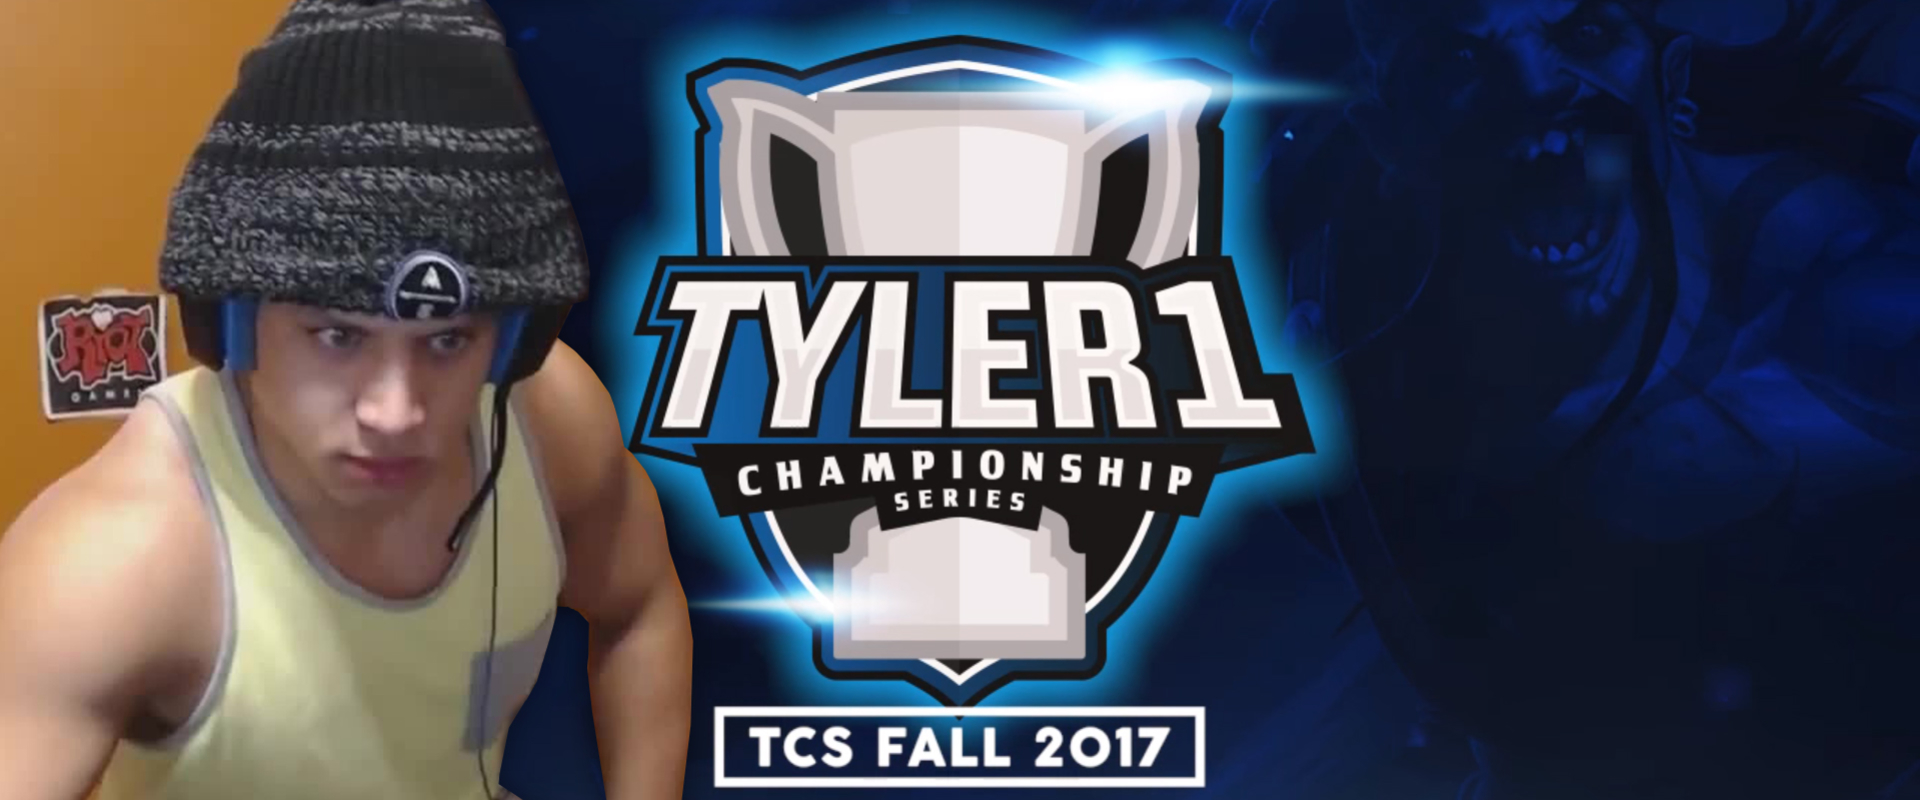 10.000 $-os versenysorozatot indít Tyler1